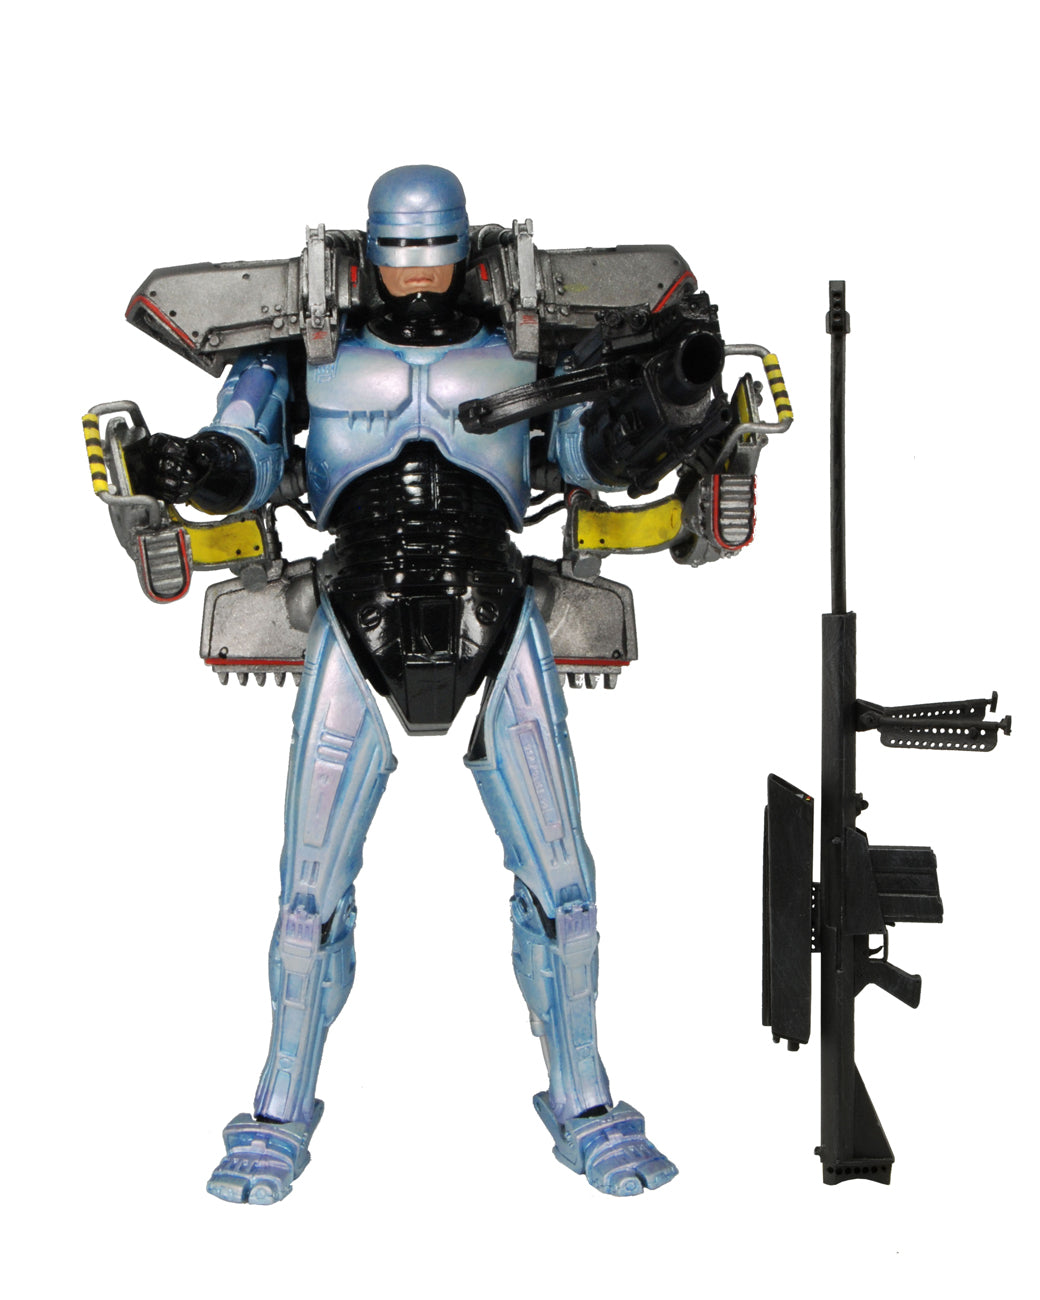 ROBOCOP – Deluxe Robocop Action Figure with Jetpack and Cobra Assault Cannon - NECA